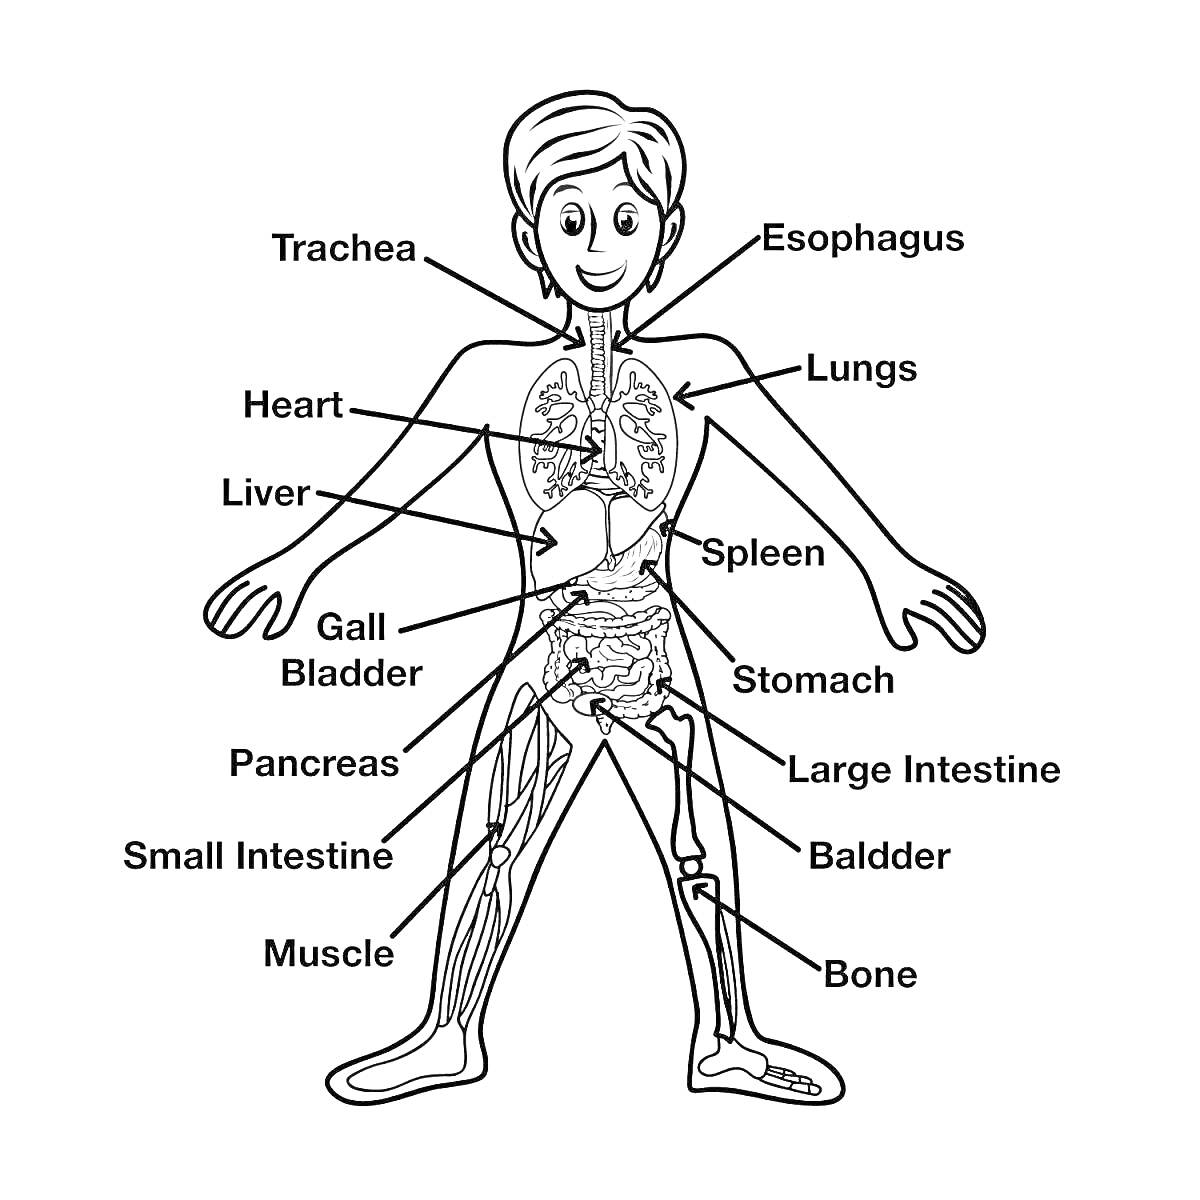 Раскраска Тело человека с указанием органов и частей: трахея, пищевод, легкие, сердце, печень, селезенка, желчный пузырь, желудок, поджелудочная железа, тонкий кишечник, толстый кишечник, мочевой пузырь, мышца, кость.